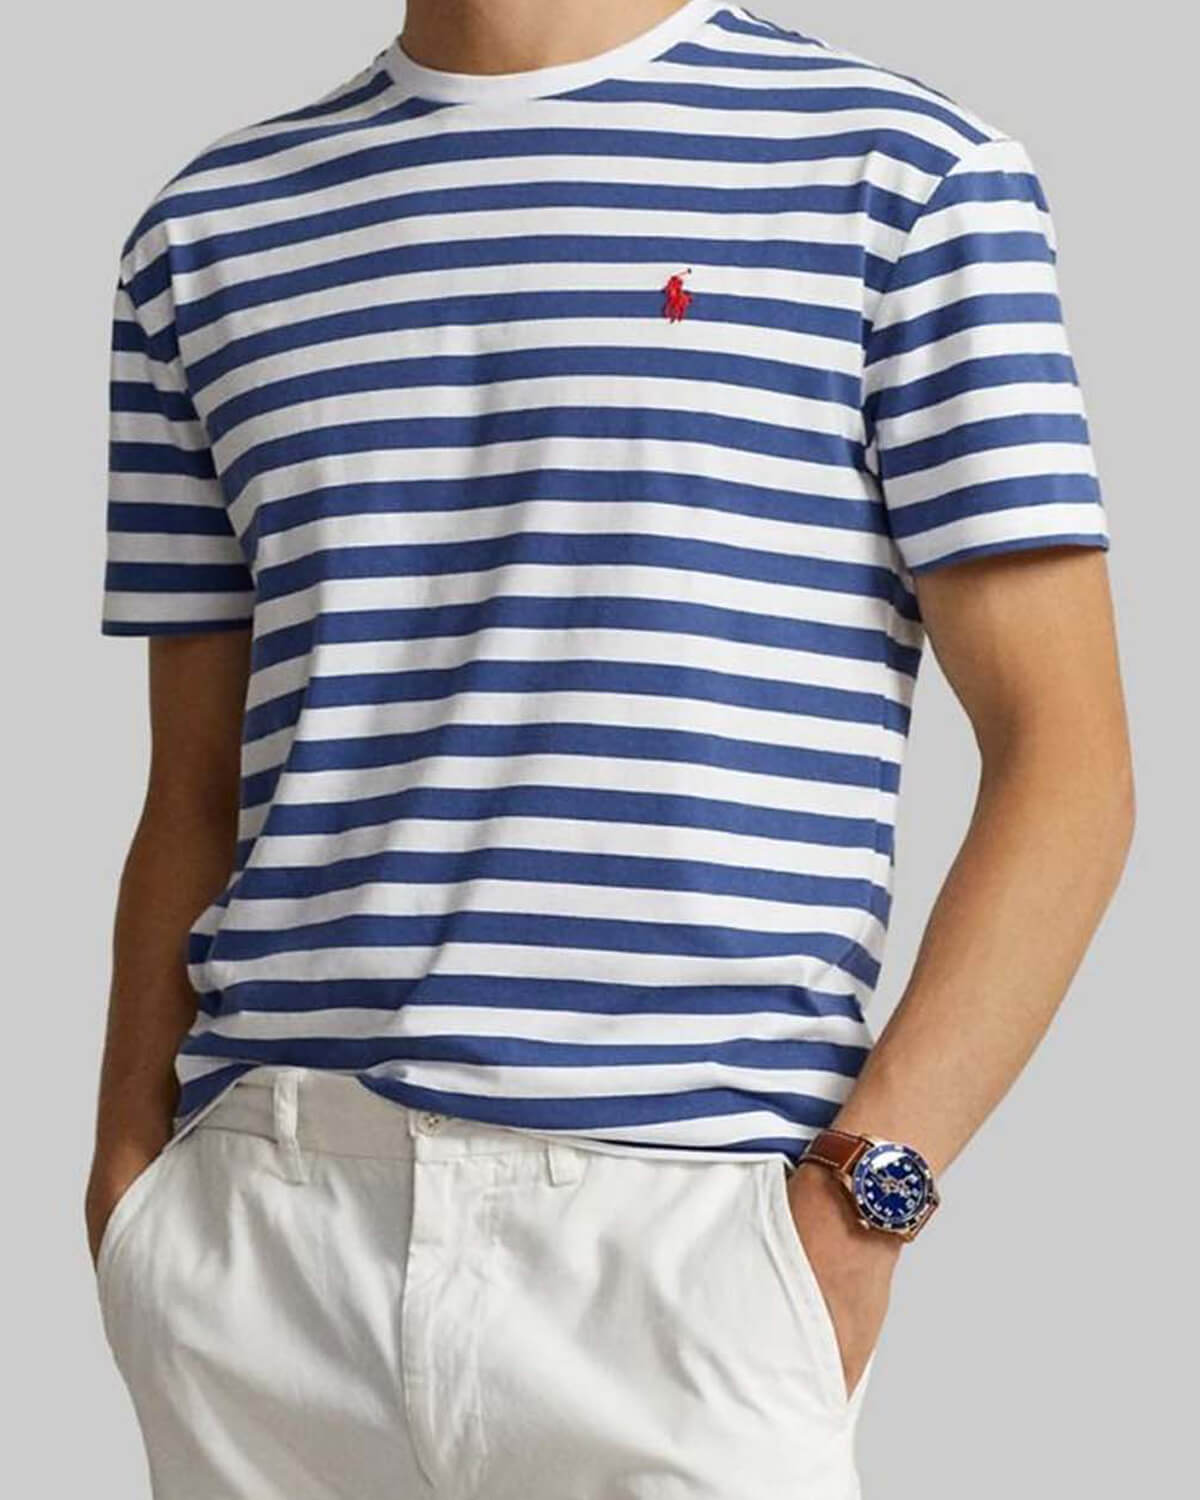 Ανδρική Κοντομάνικη Μπλούζα Polo Ralph Lauren - Sscnm18